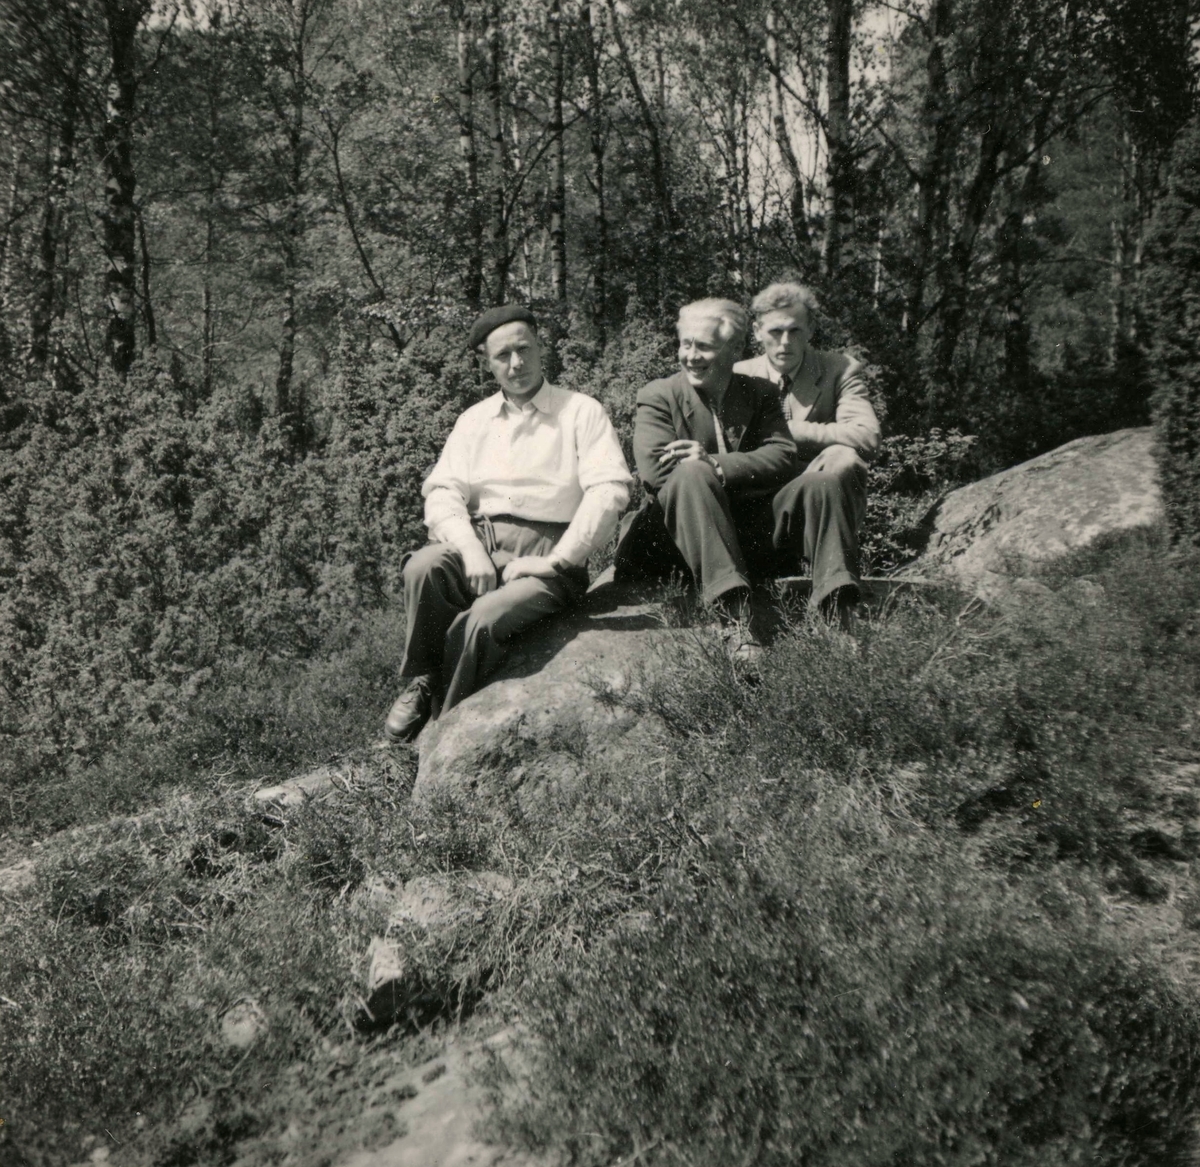 Tre män sitter på en stenbumling vid Ekans gård, Ekan 1:1 år 1953. 
Från vänster: 1. (i basker) Rolf Svensson (1909 - 1989), Ekan. 2. Einar Lindkvist (1922 - 2002) som arbetade på gården. 3. Sven Erik Stenbom (1926 - 2003), Tollered (granngård till Ekan).